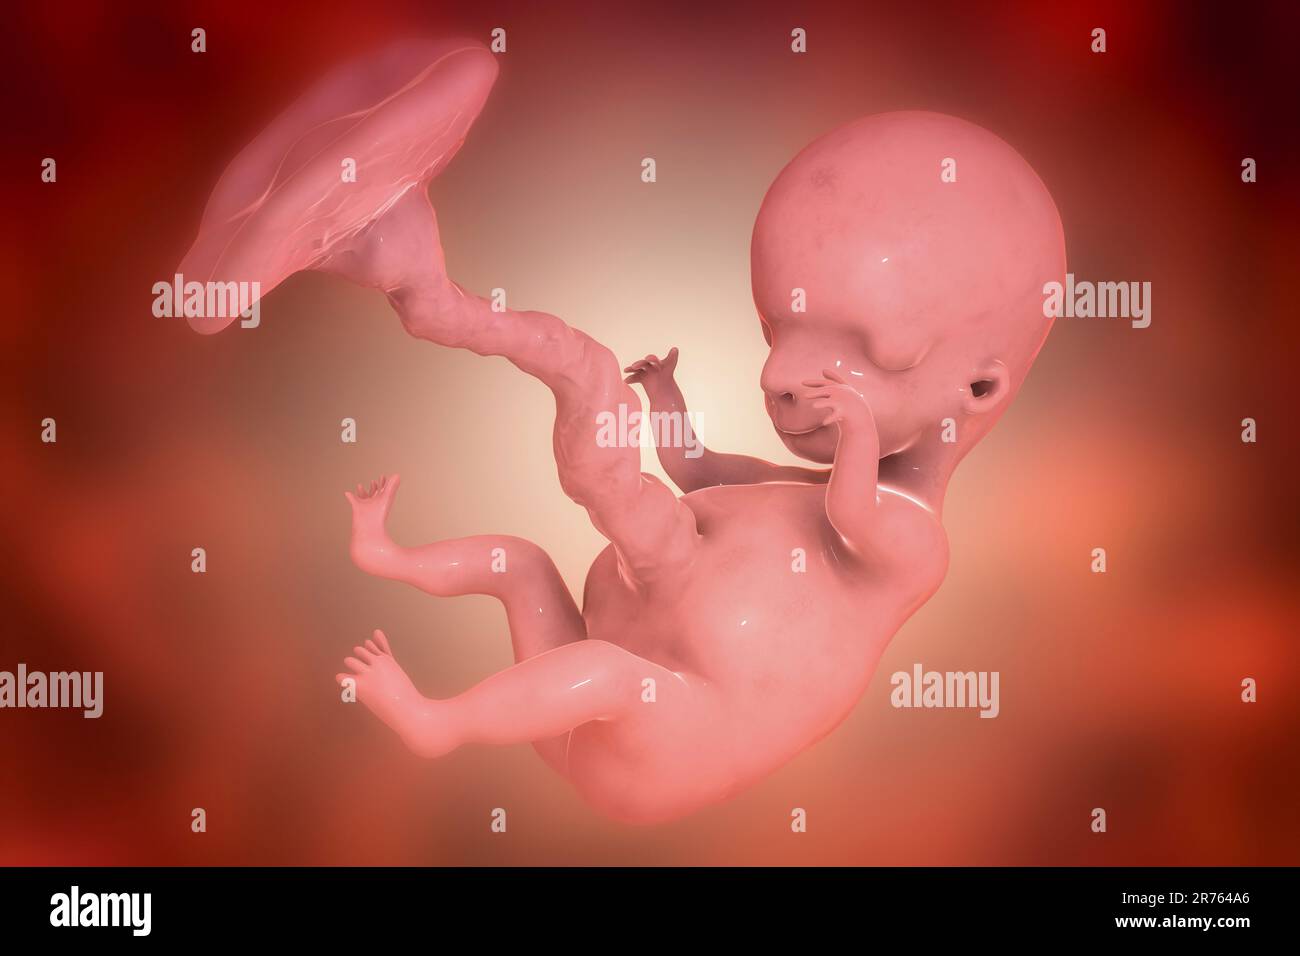 Fœtus humain, illustration informatique. Période foetale précoce, semaine 8 - semaine 16 Banque D'Images